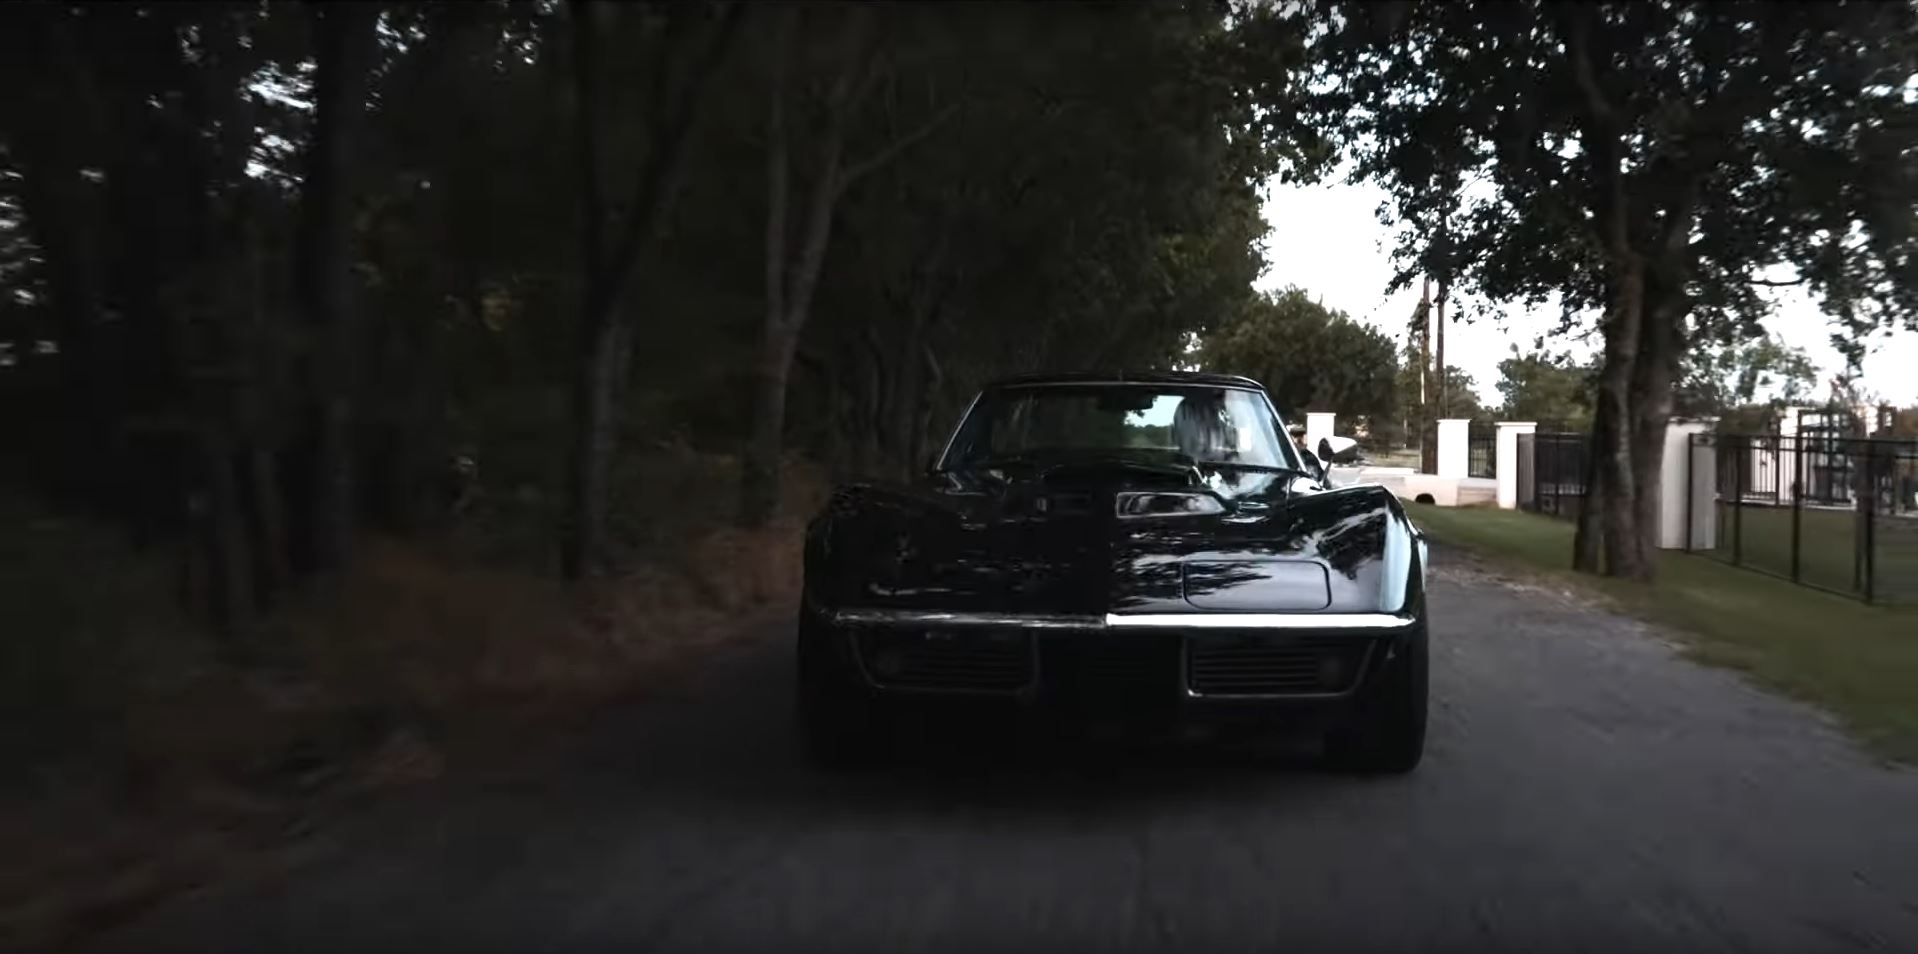 1968 Corvette C3 Family Ties